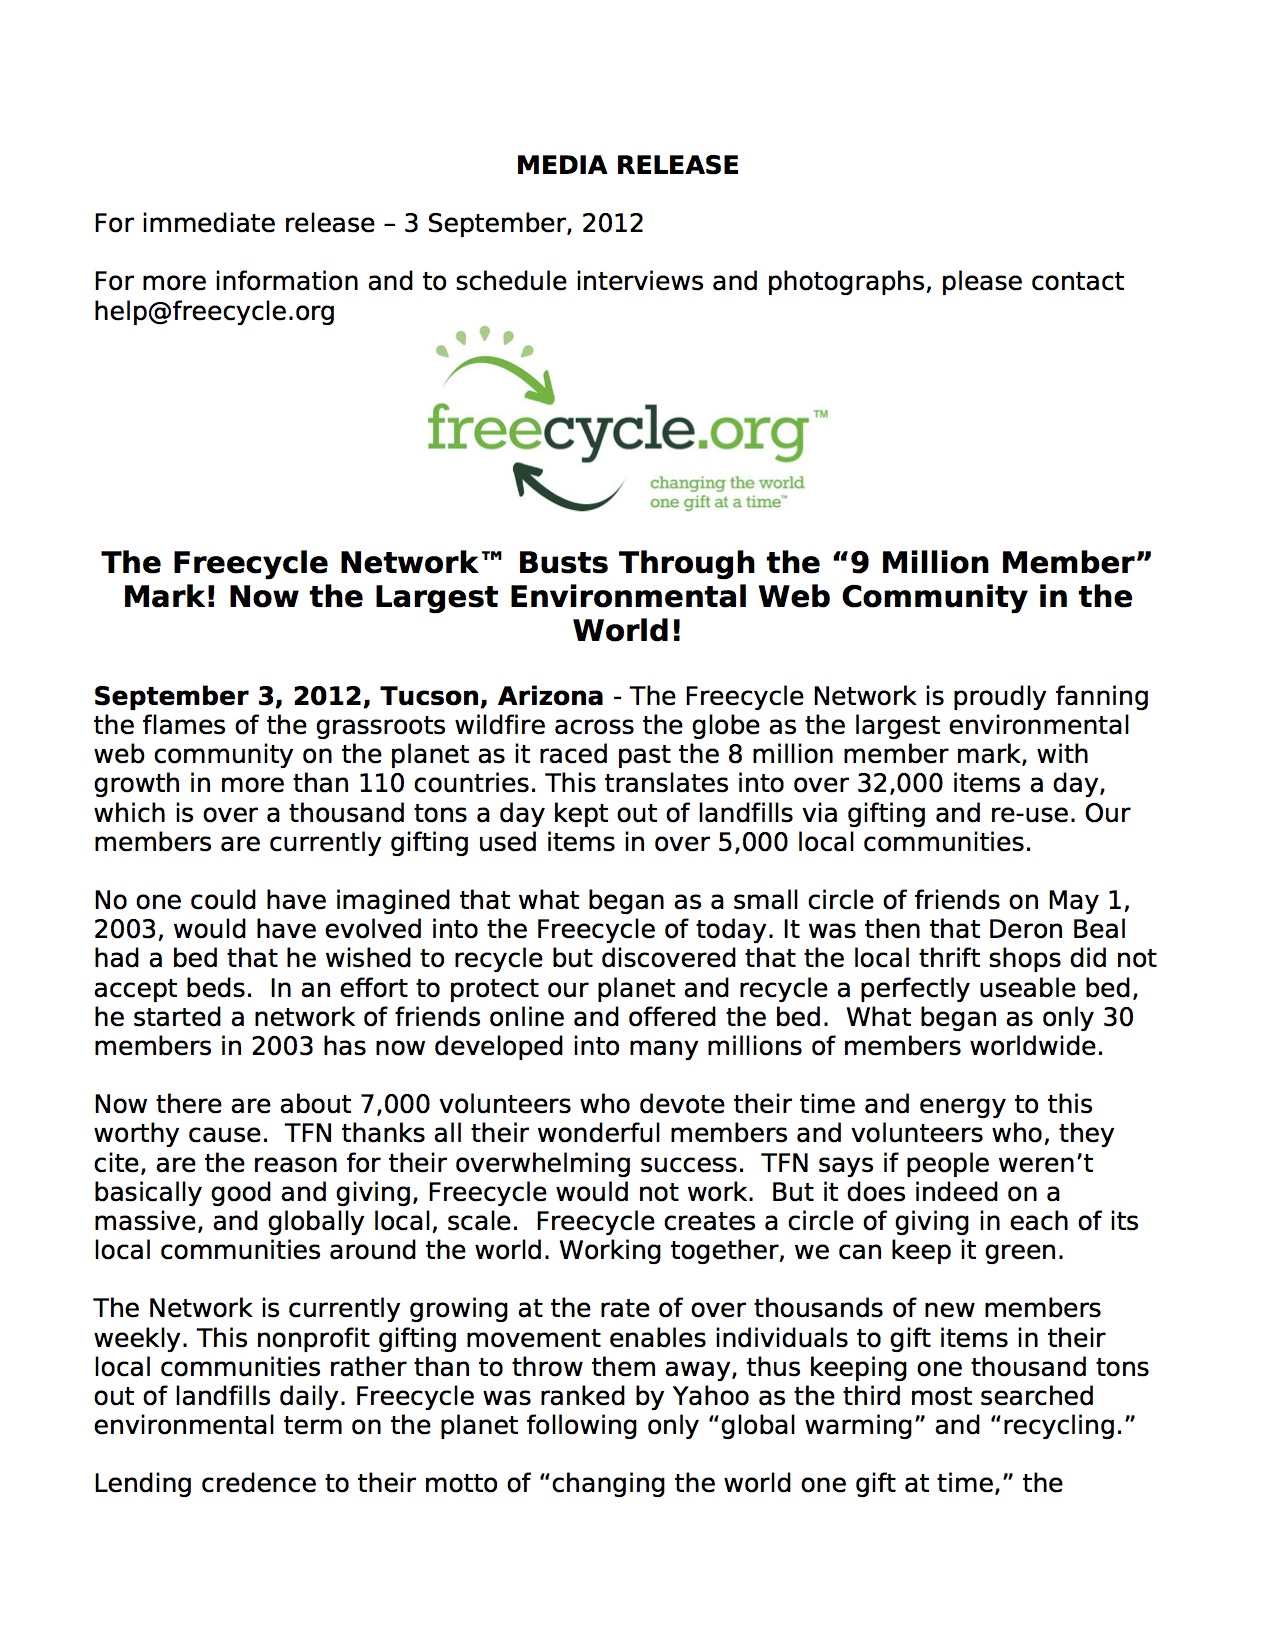 12-09-03 Freecycle press release 9m members(1).jpg